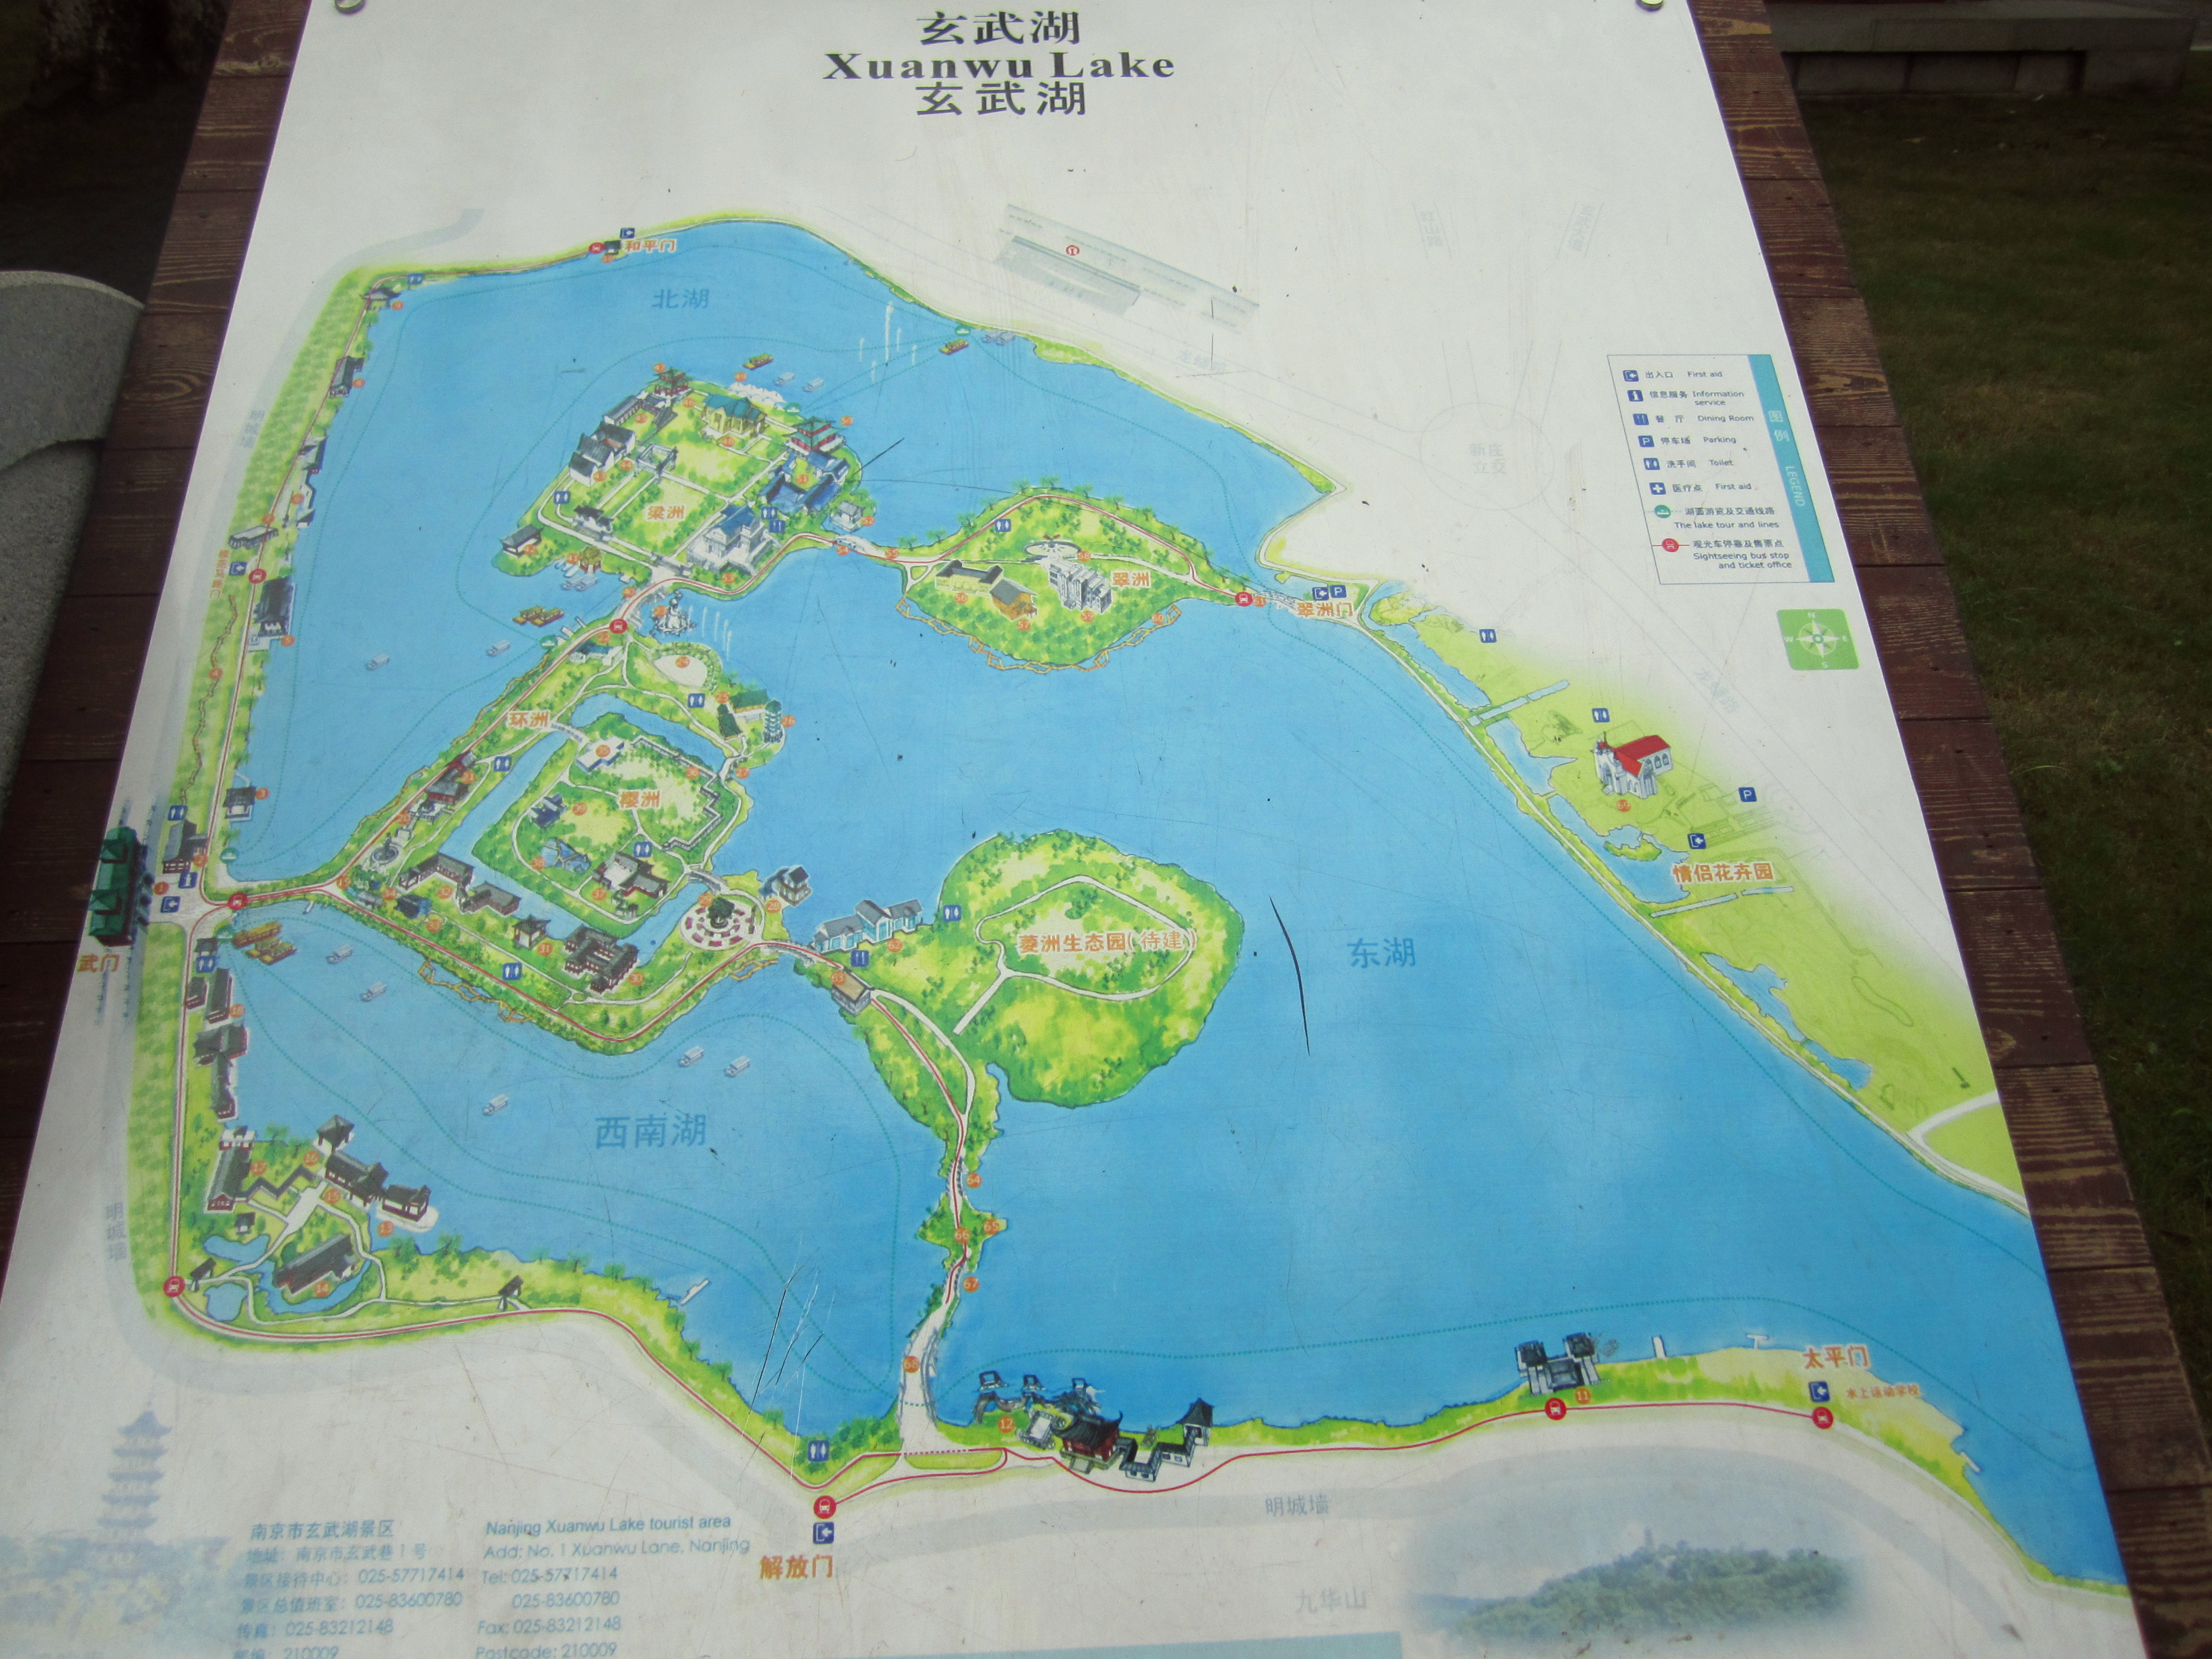 玄武湖是一个典型的城市公园,比较有名,风景还算可以